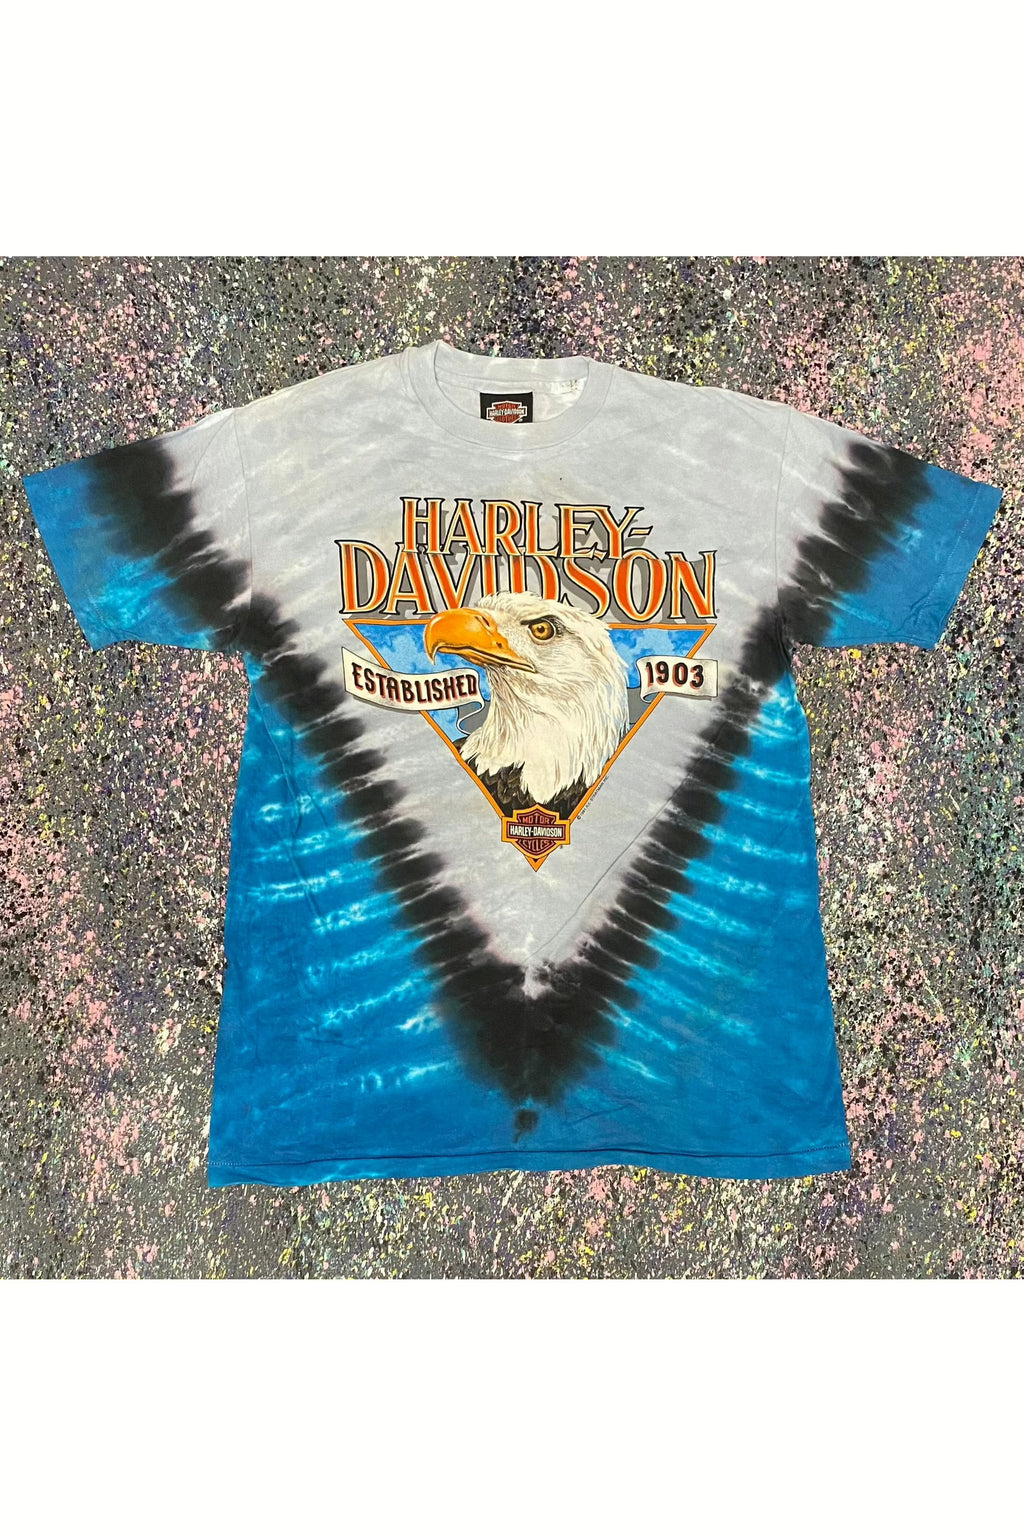 Vintage 1991 Oak Lawn Harley-Davidson Bald Eagle Tie-Dye Tee- L